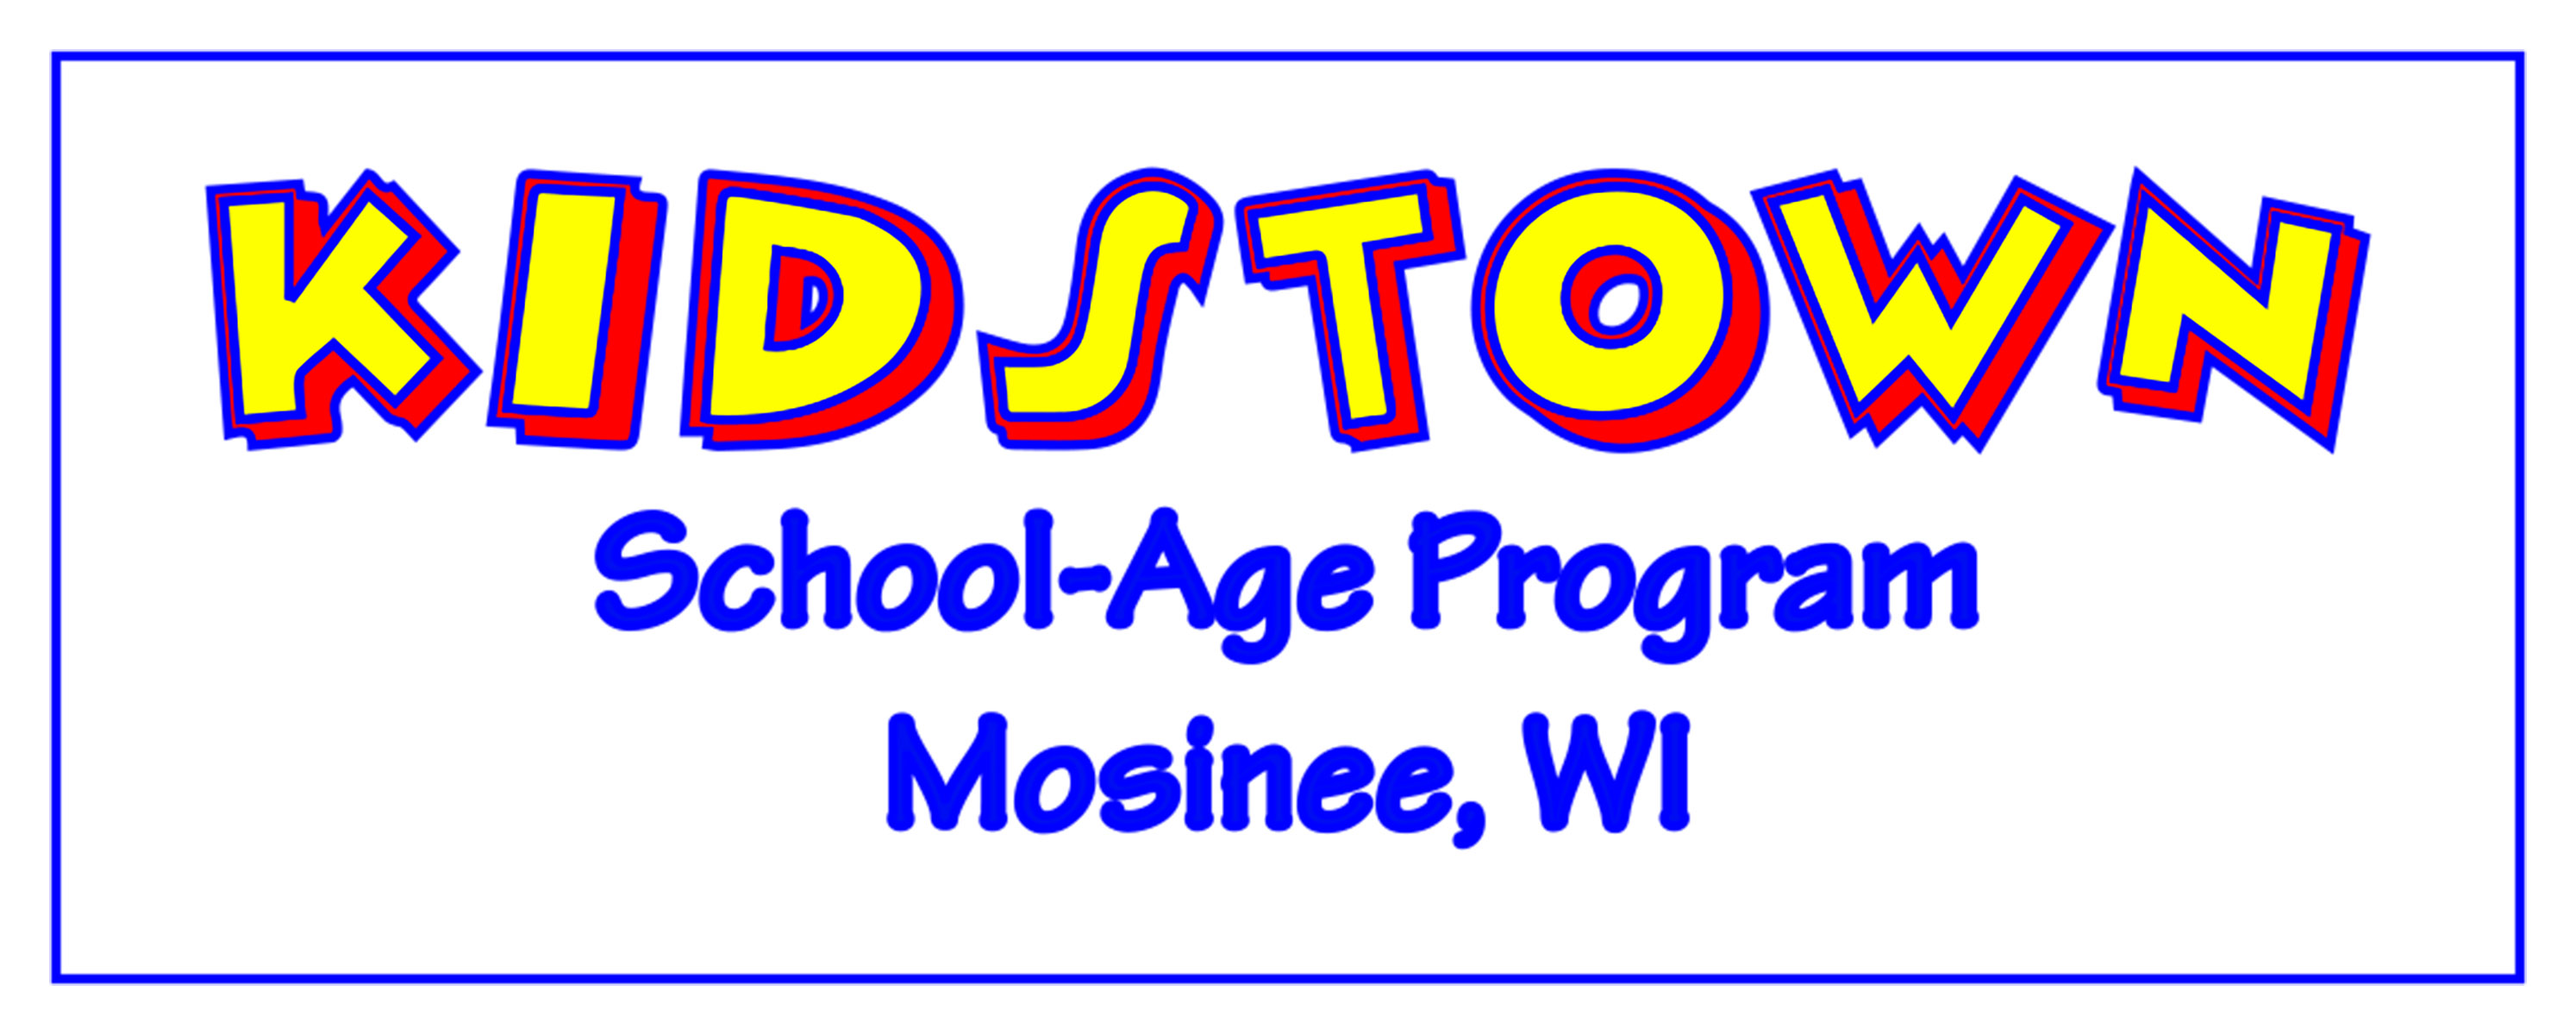 KIDSTOWN School-Age Program